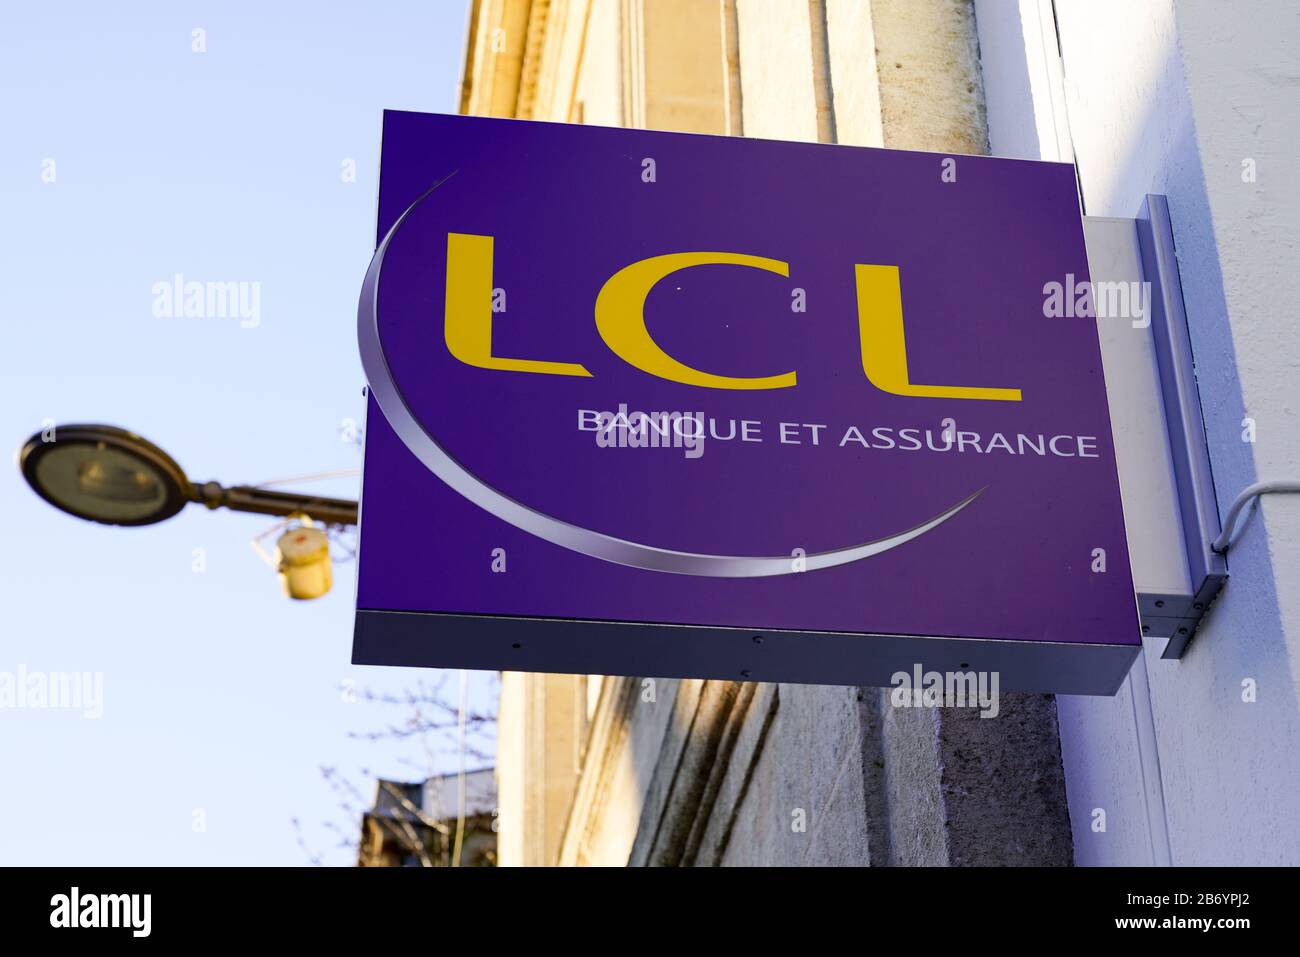 Bordeaux , Aquitaine / France - 02 21 2020 : lcl logo sign le credit Lyonnais Banque et assurance french bank brand signage Stock Photo